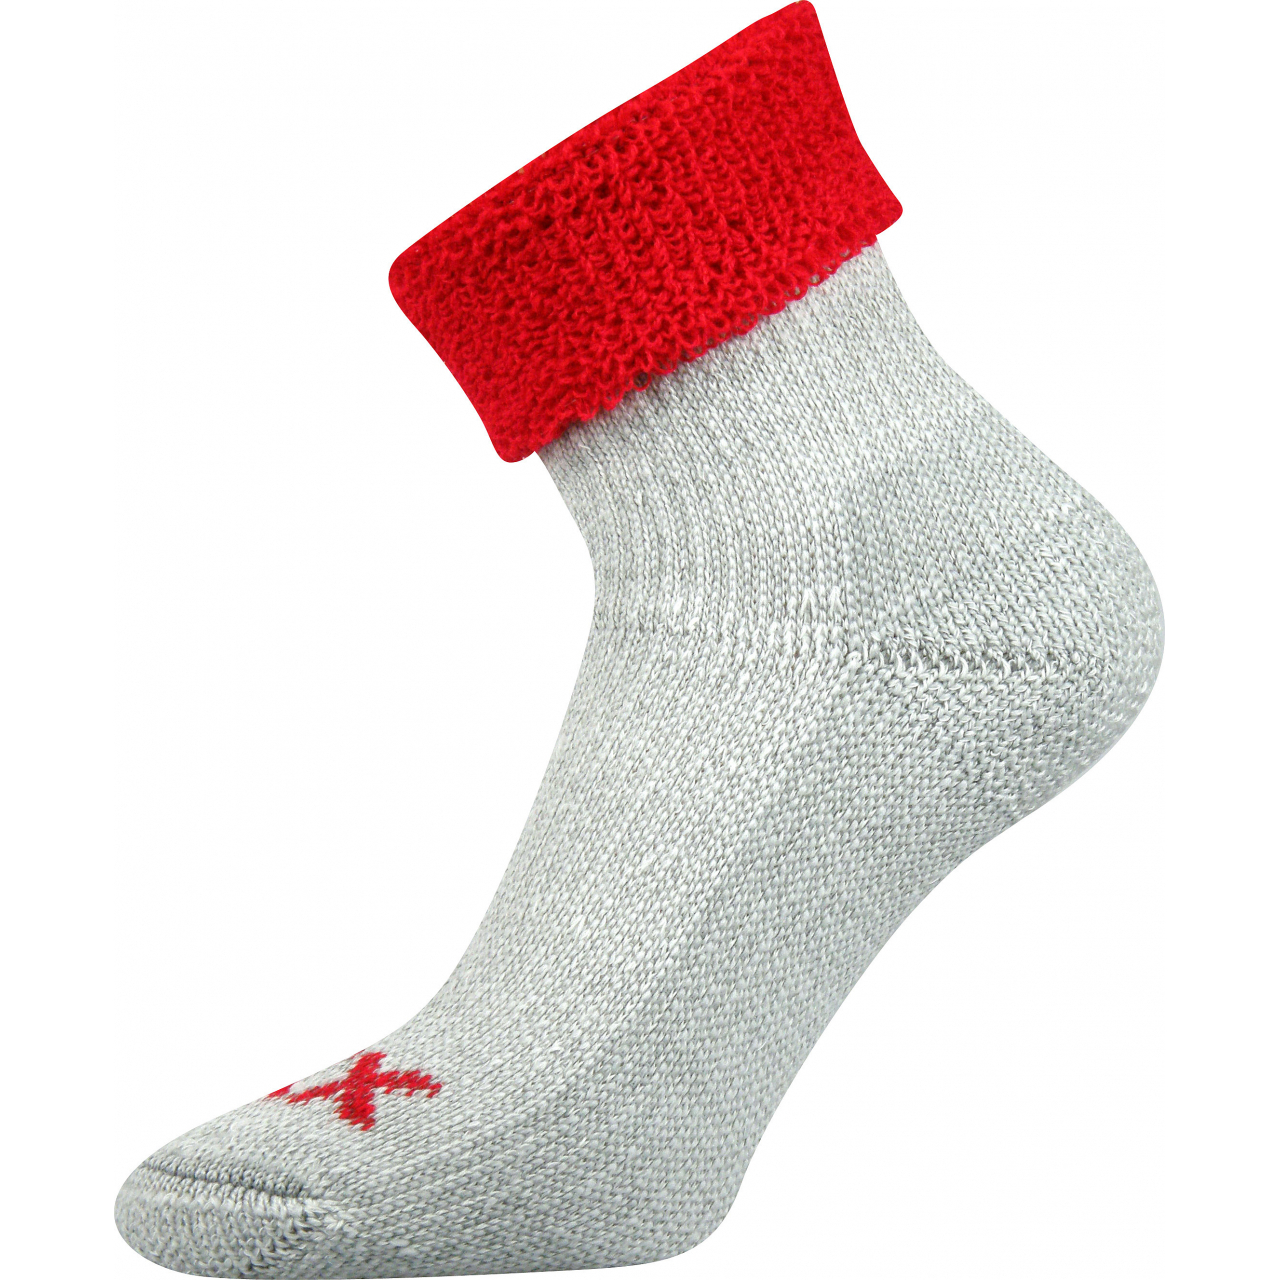 Ponožky dámské termo Voxx Quanta - šedé-červené, 35-38